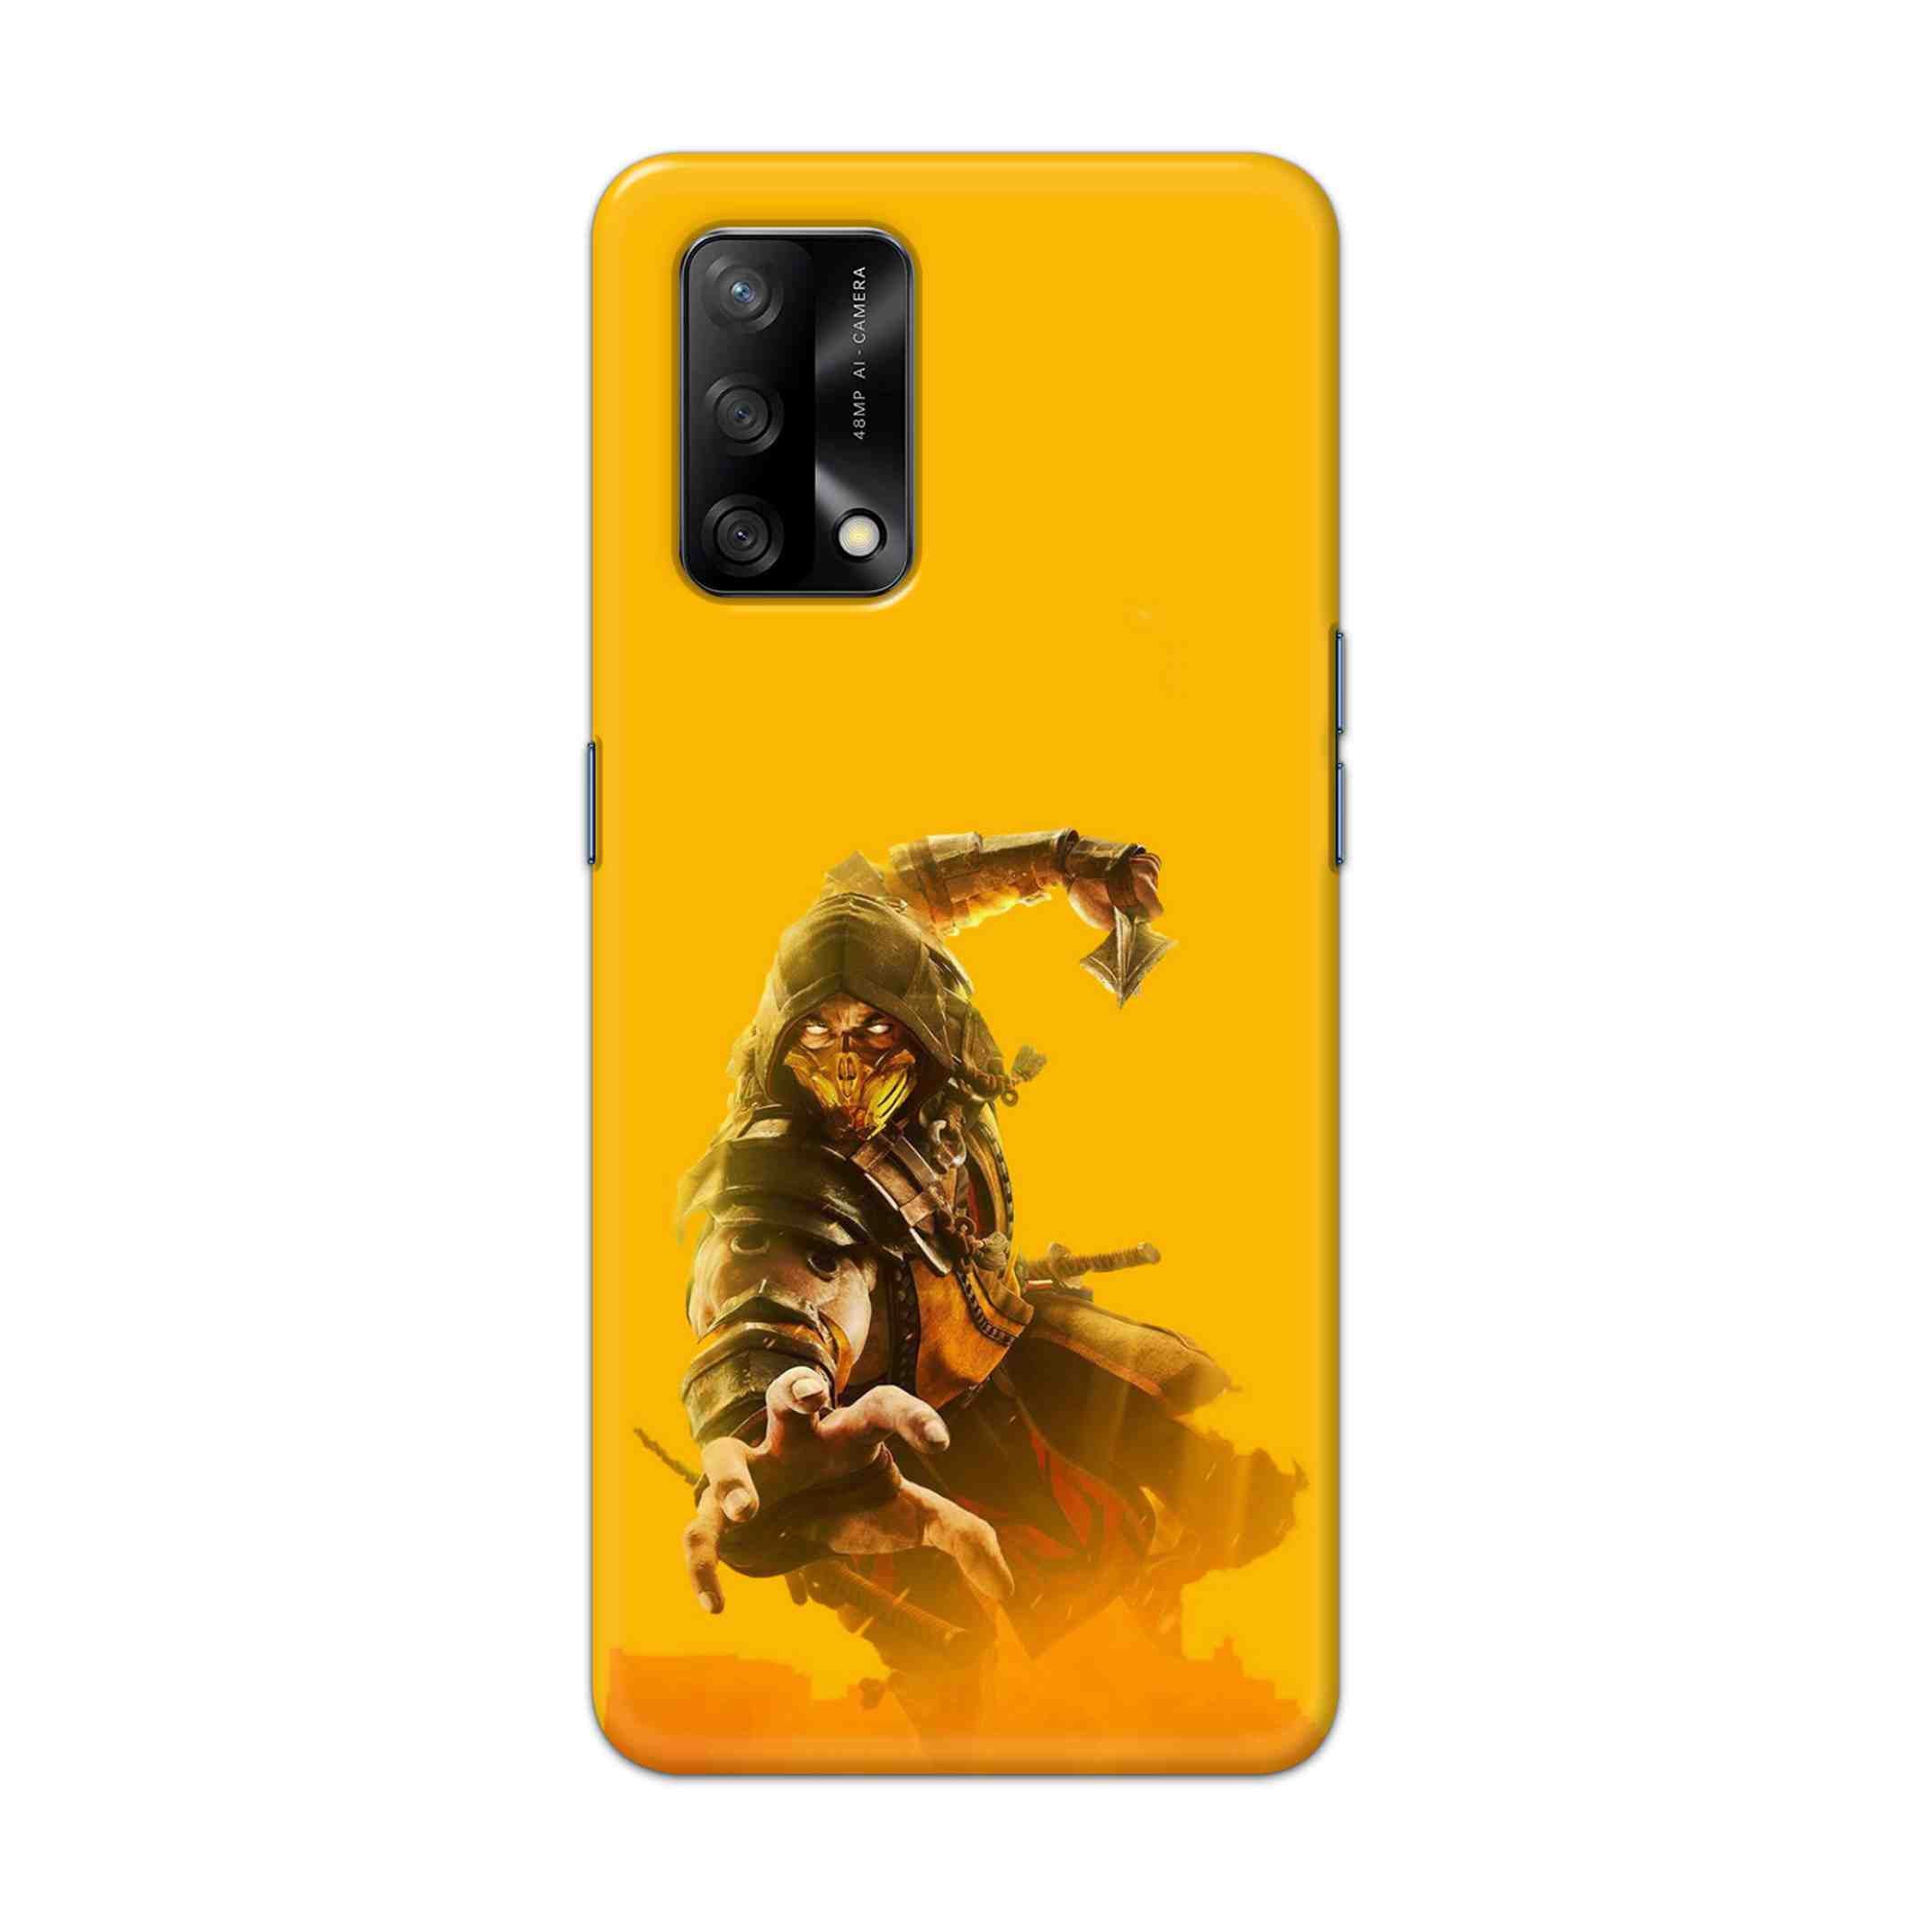 Buy Mortal Kombat Hard Back Mobile Phone Case Cover For Oppo F19 Online